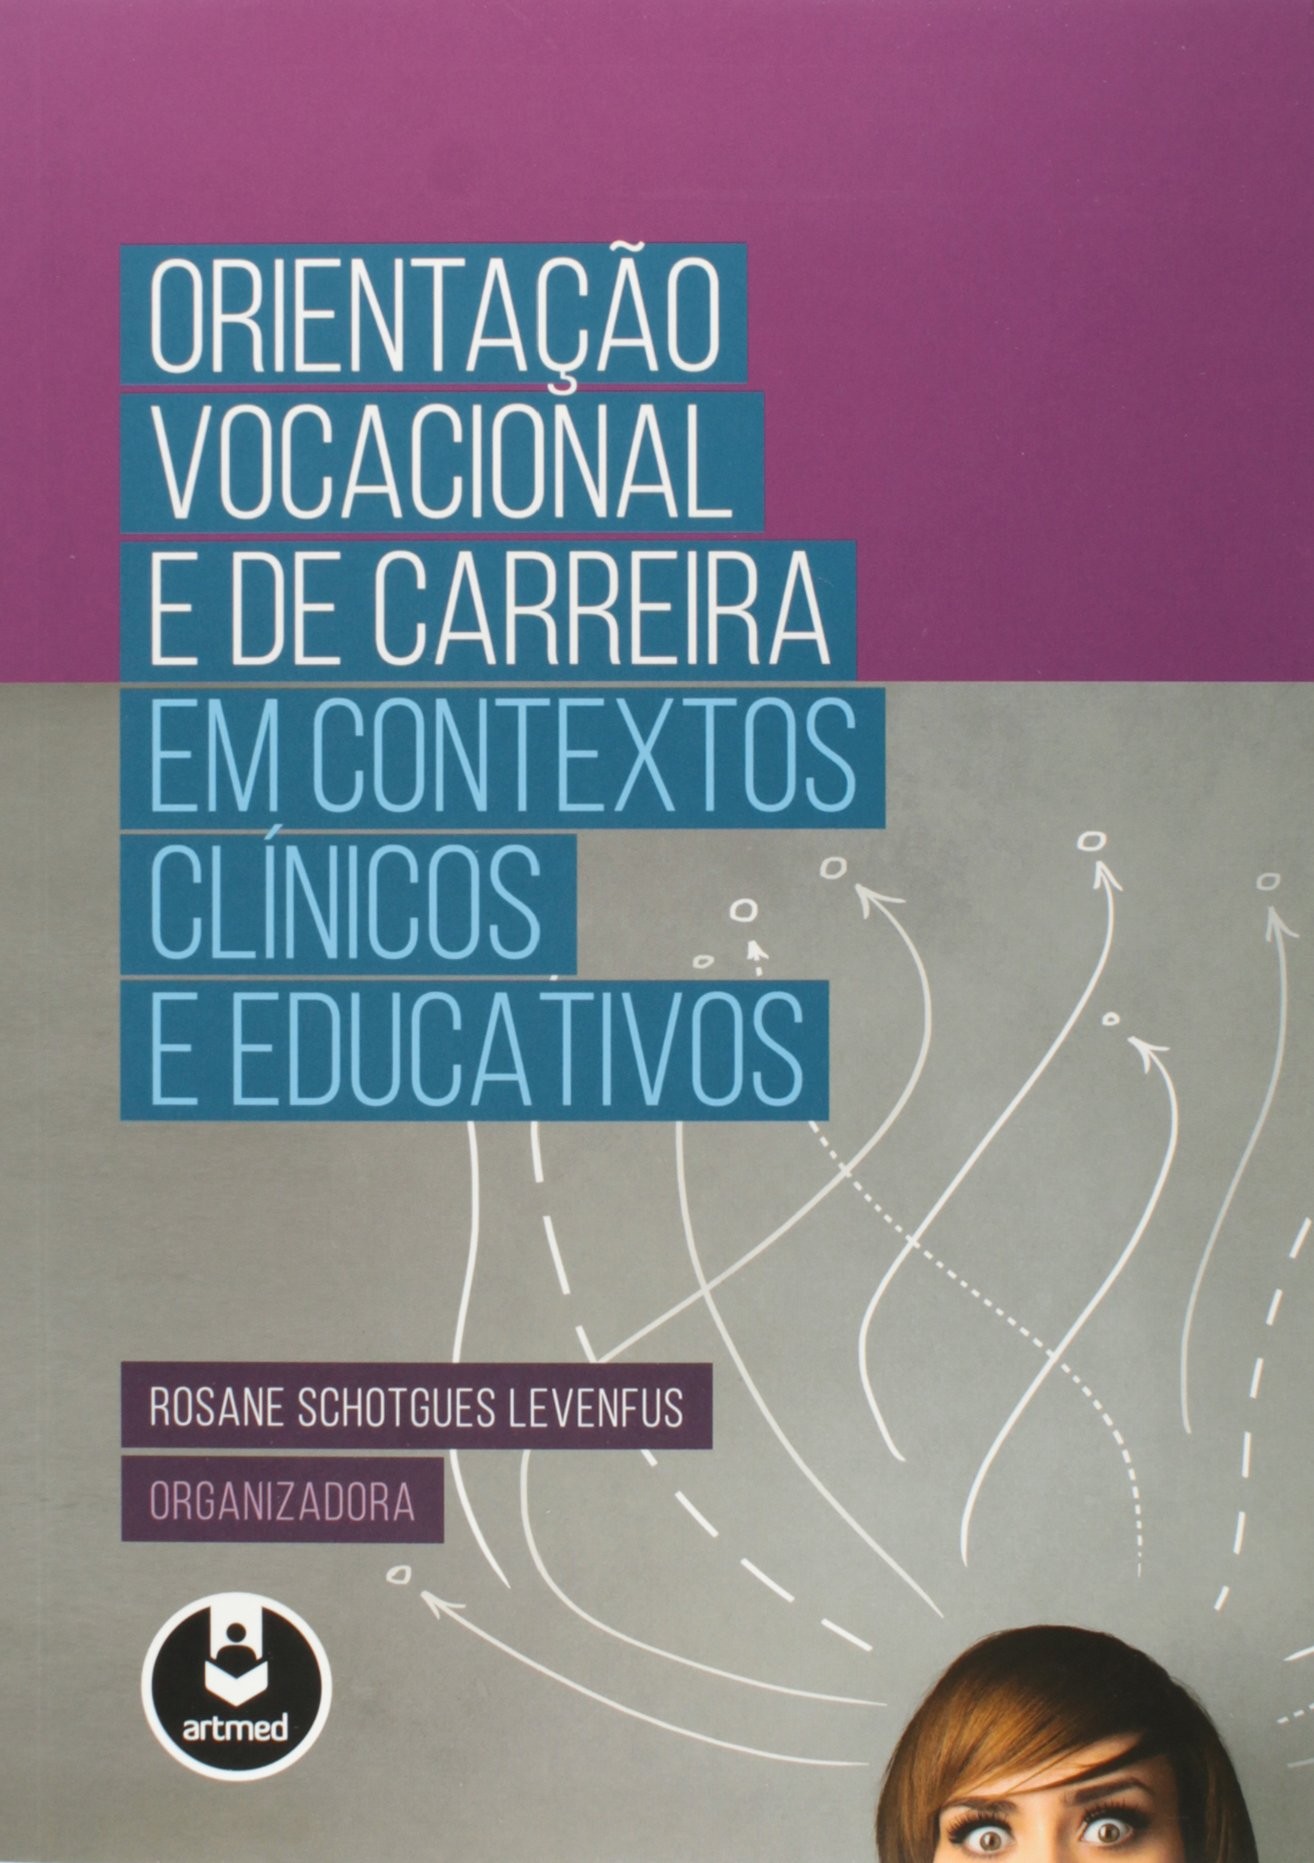 ORIENTACAO VOCACIONAL E DE CARREIRA EM CONTEXTOS CLINICOS E EDUCATIVOS